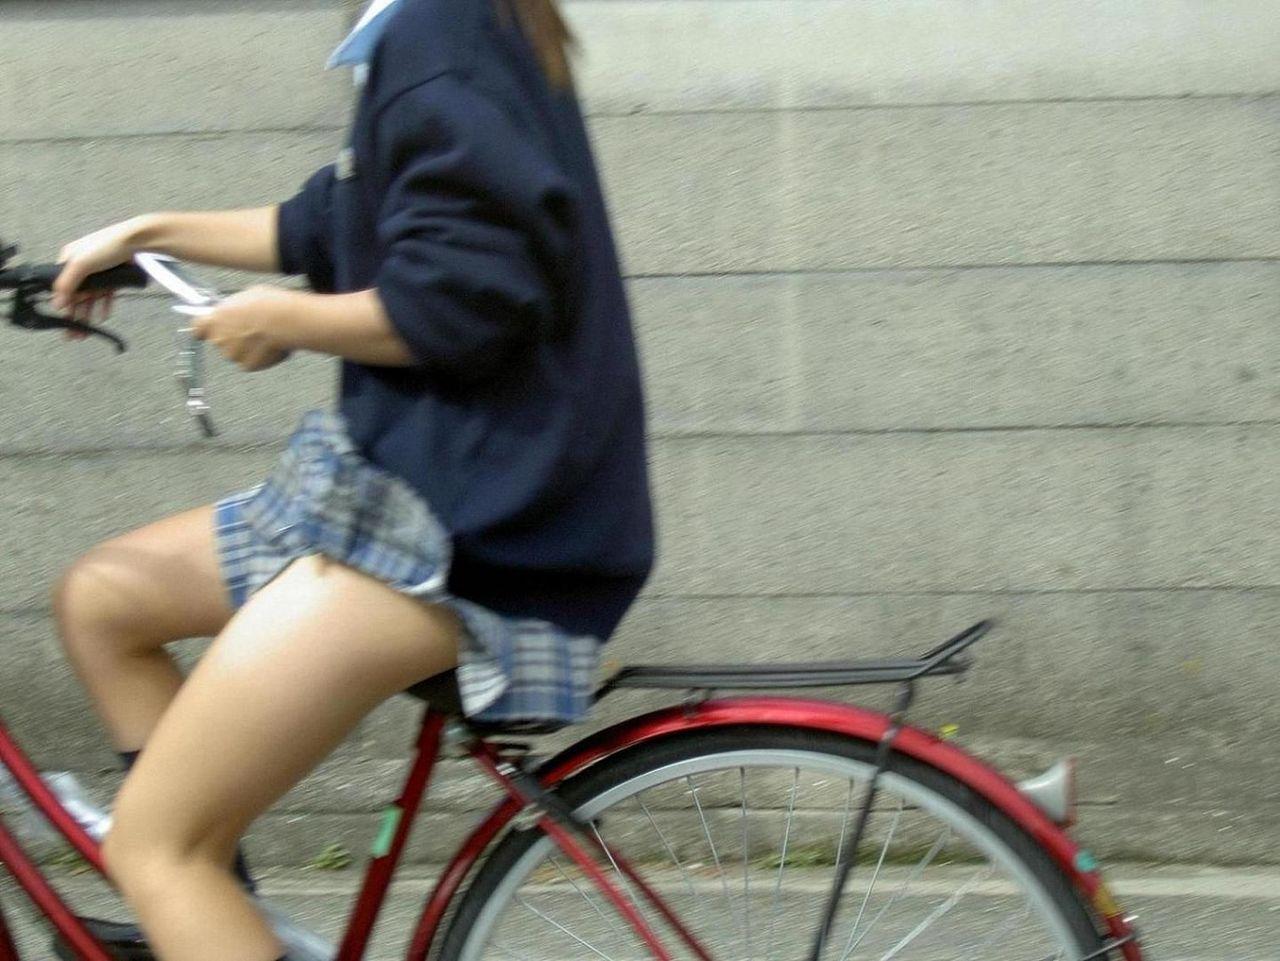 青春真っ盛りなもぎたて女子高生の自転車パンチラをアホ面で盗撮したったｗ (20枚)011